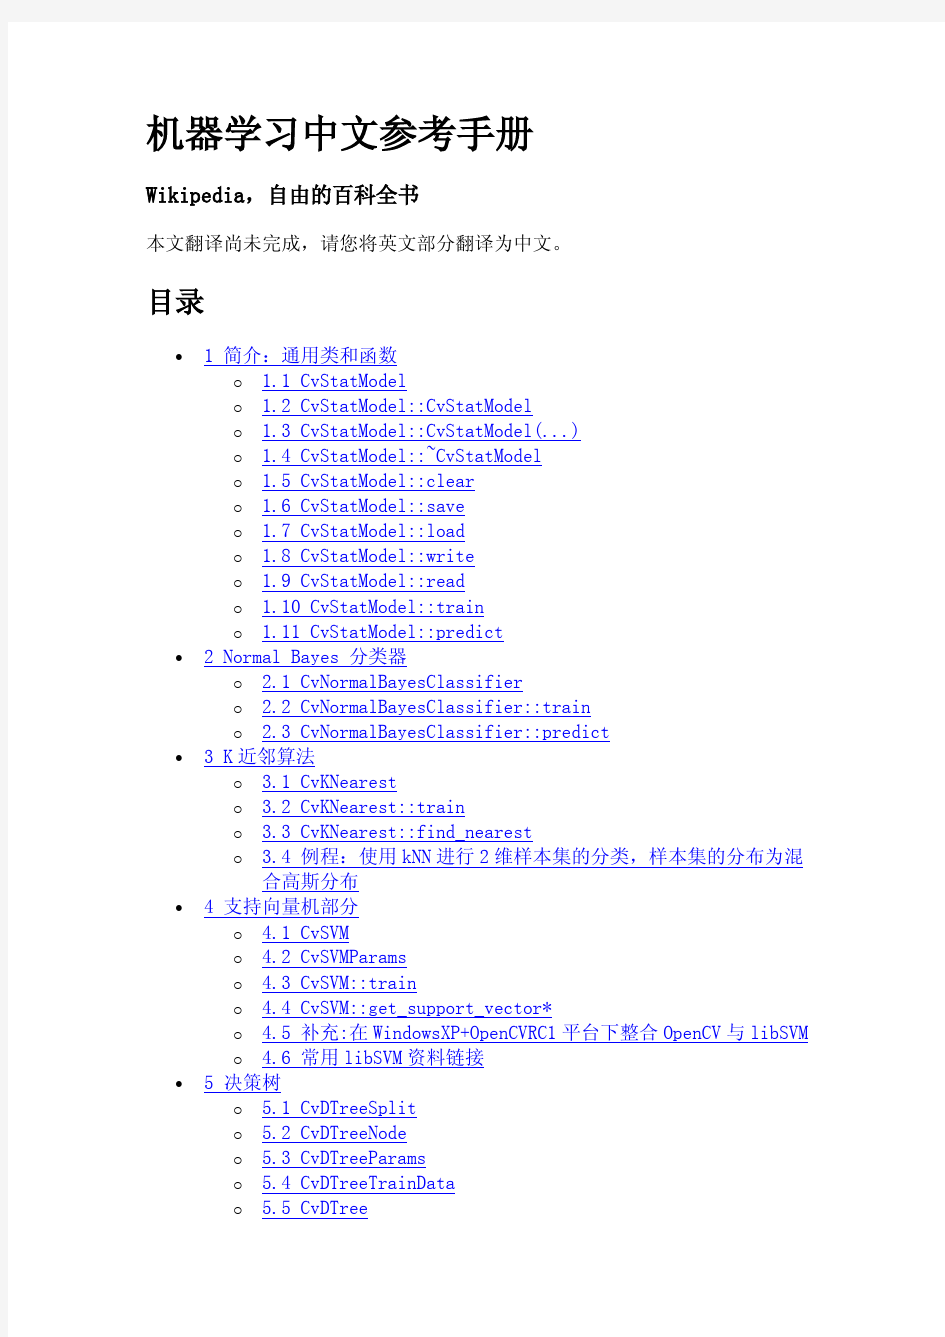 OpenCv参考手册-机器学习中文参考手册